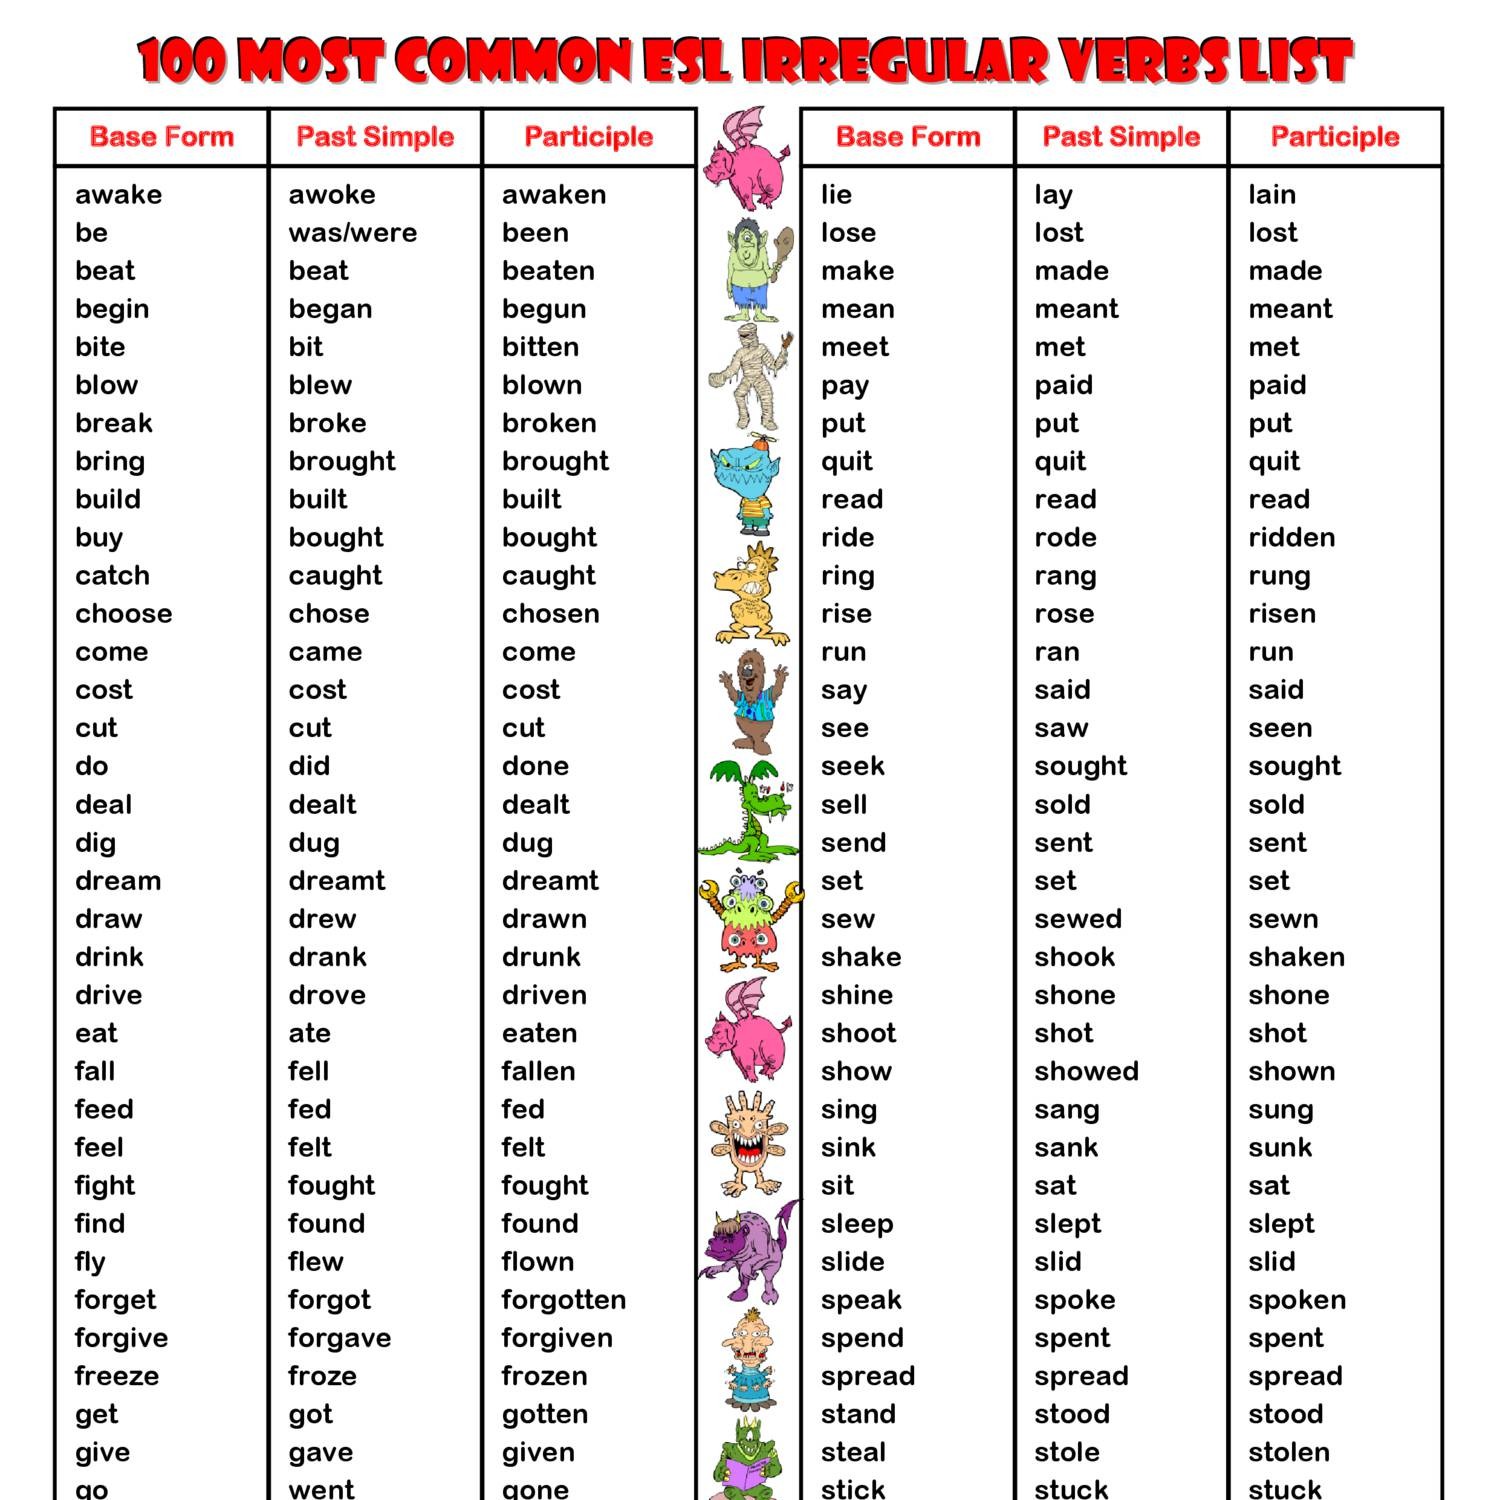 100 Most Common Esl Irregular Verbs List pdf DocDroid